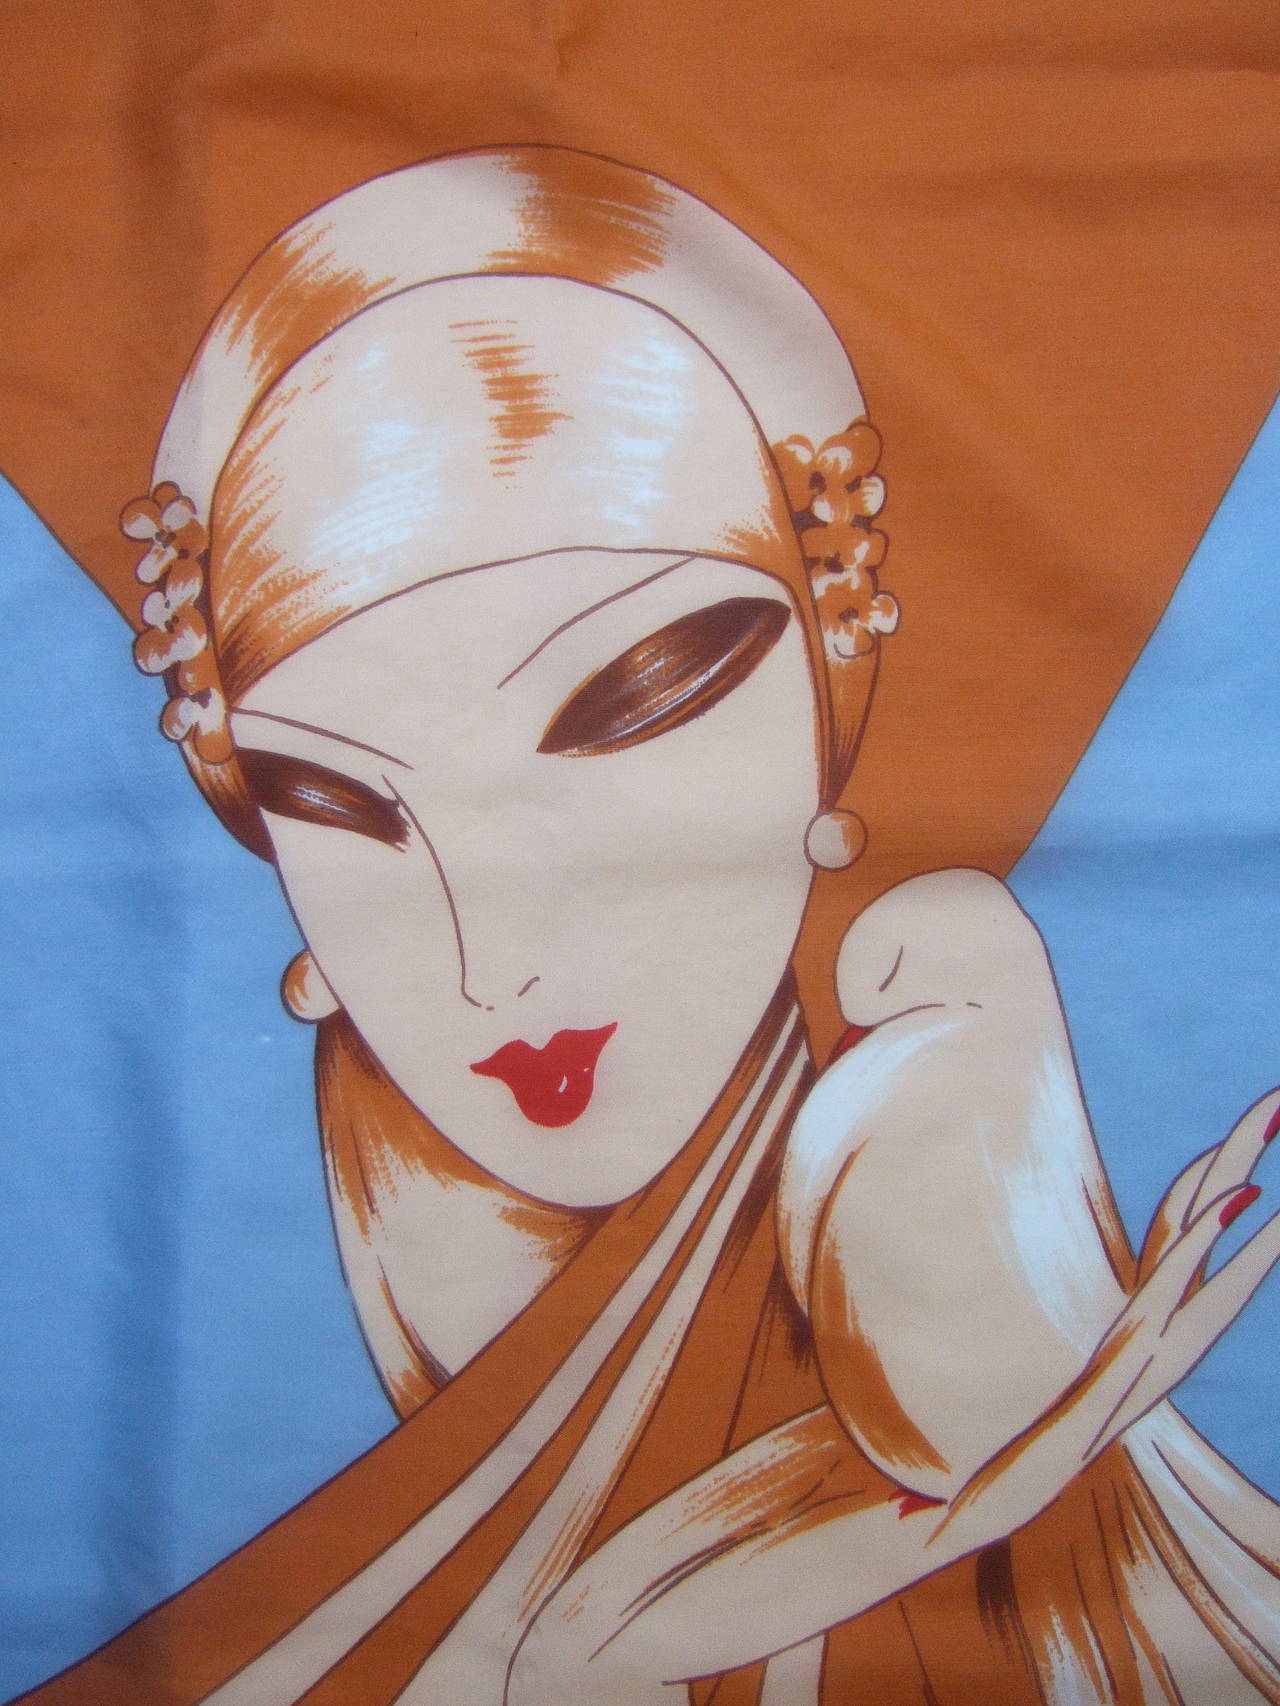 Women's Pierre Cardin Art Deco Inspired Stylized Woman Silk Scarf c 1970s